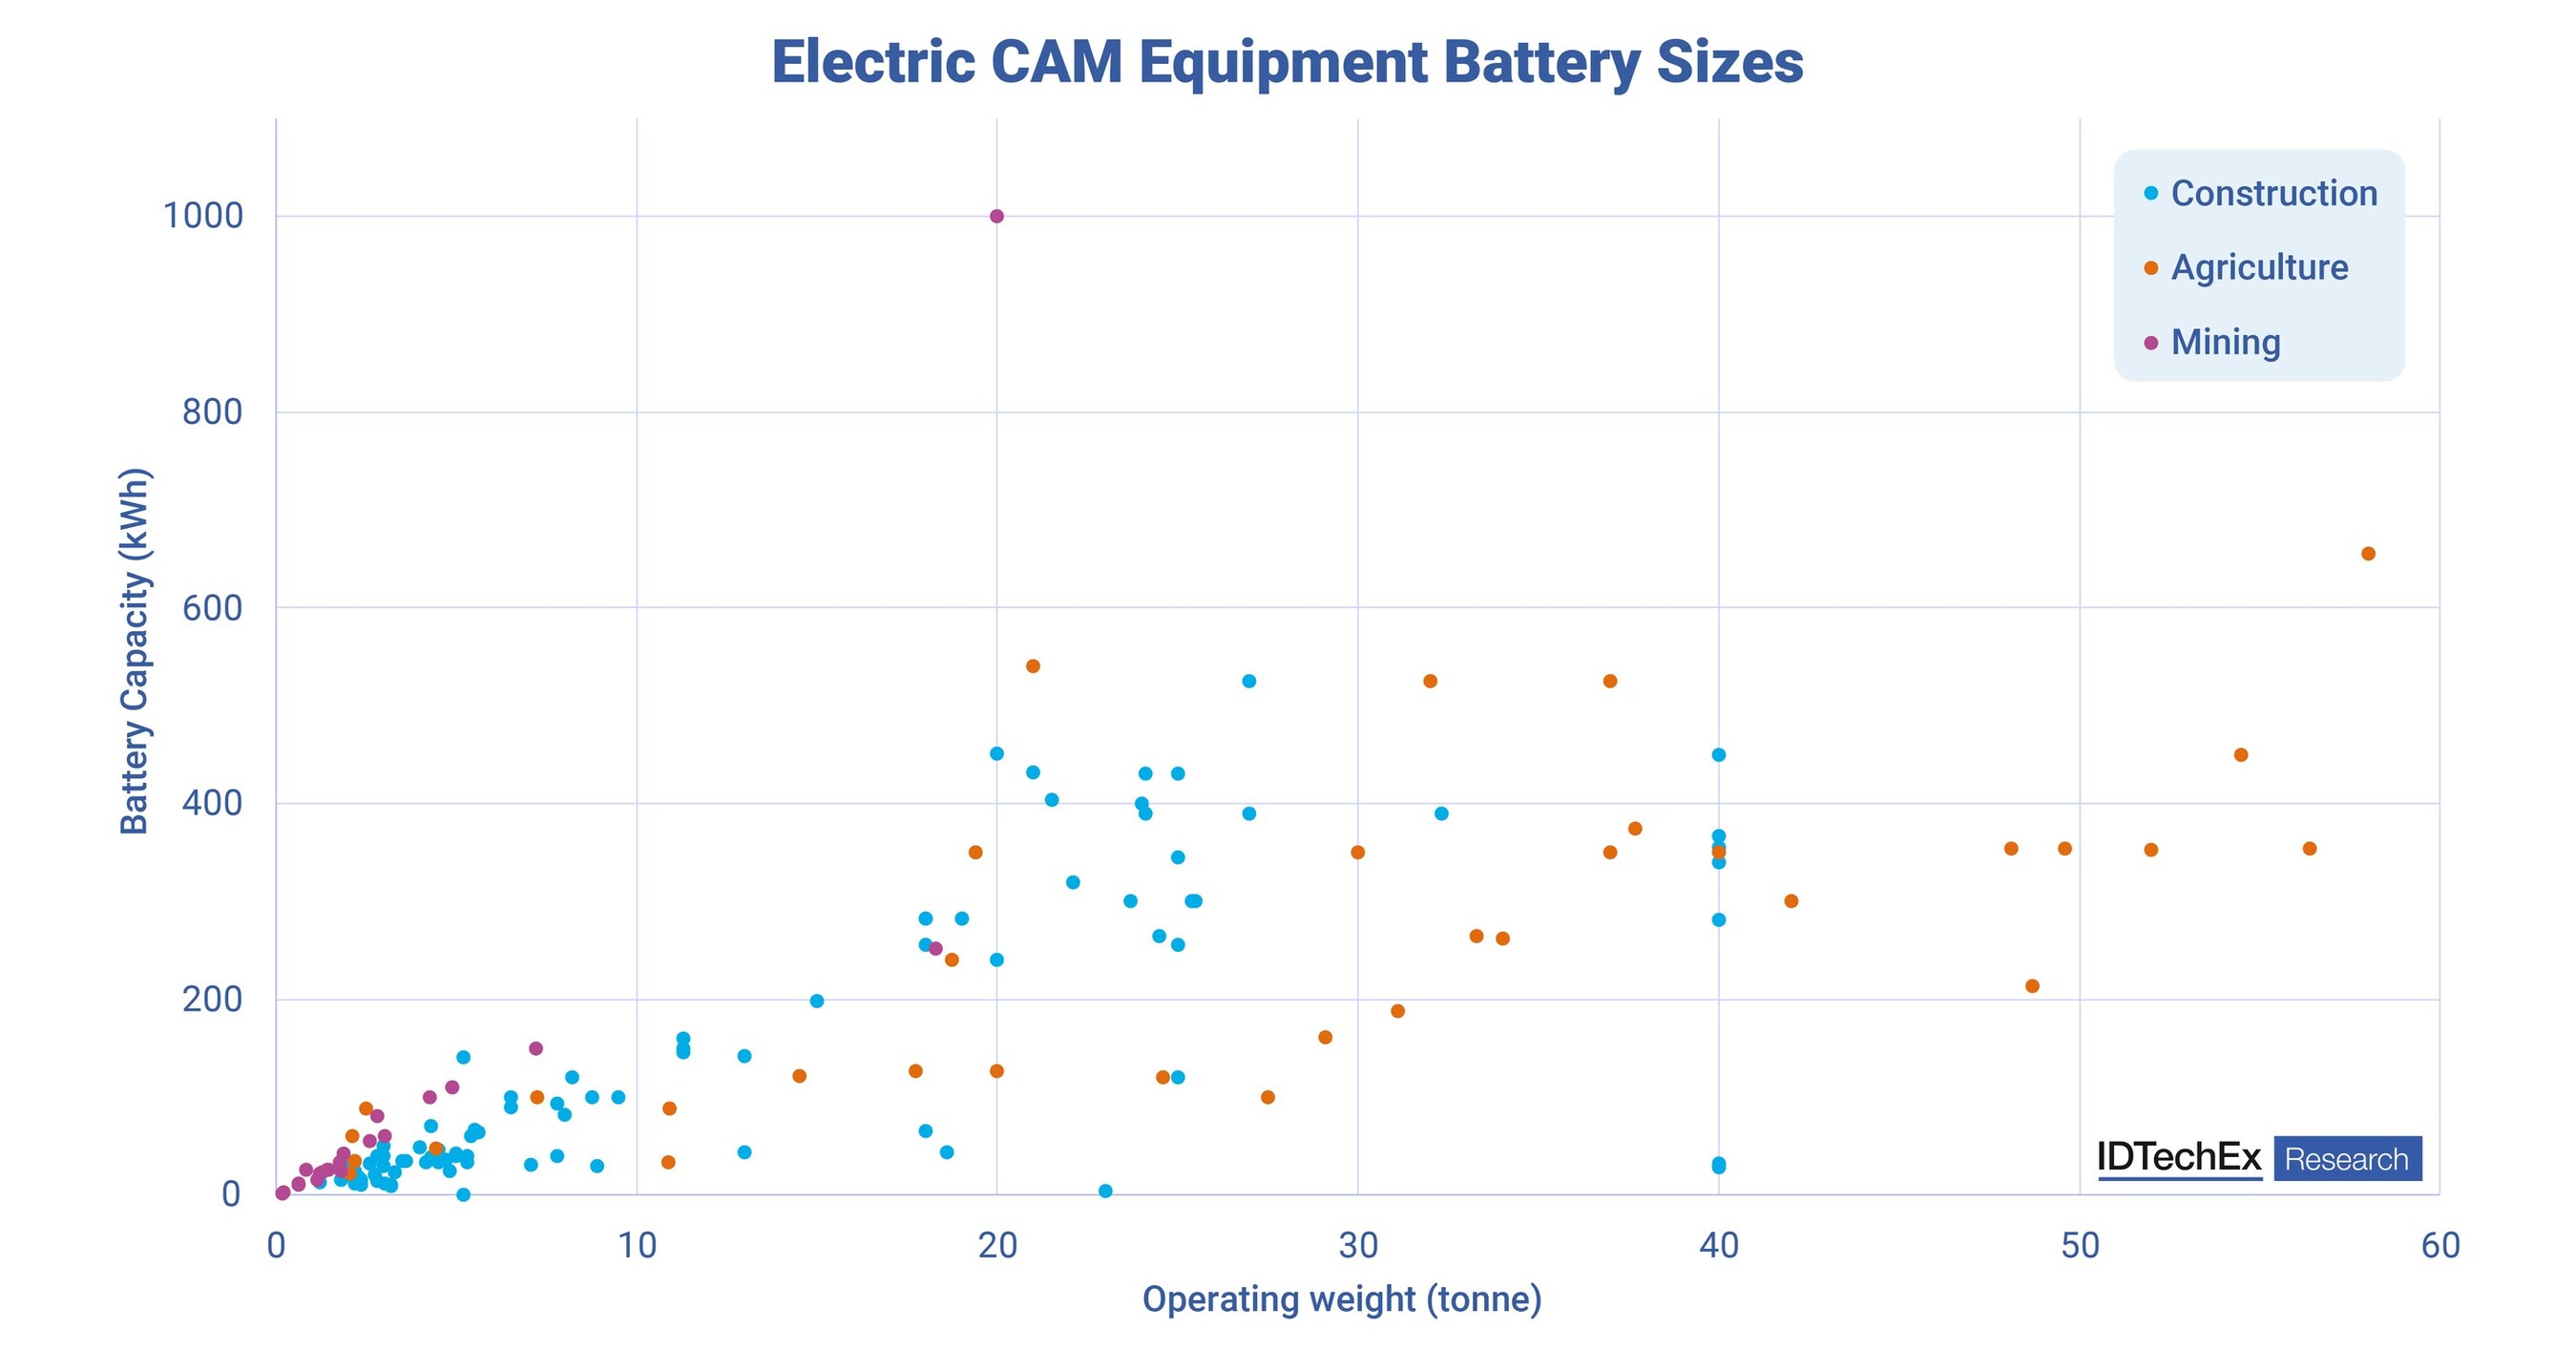 IDTechEx讨论电动CAM机器为什么需要多样化的电池选项